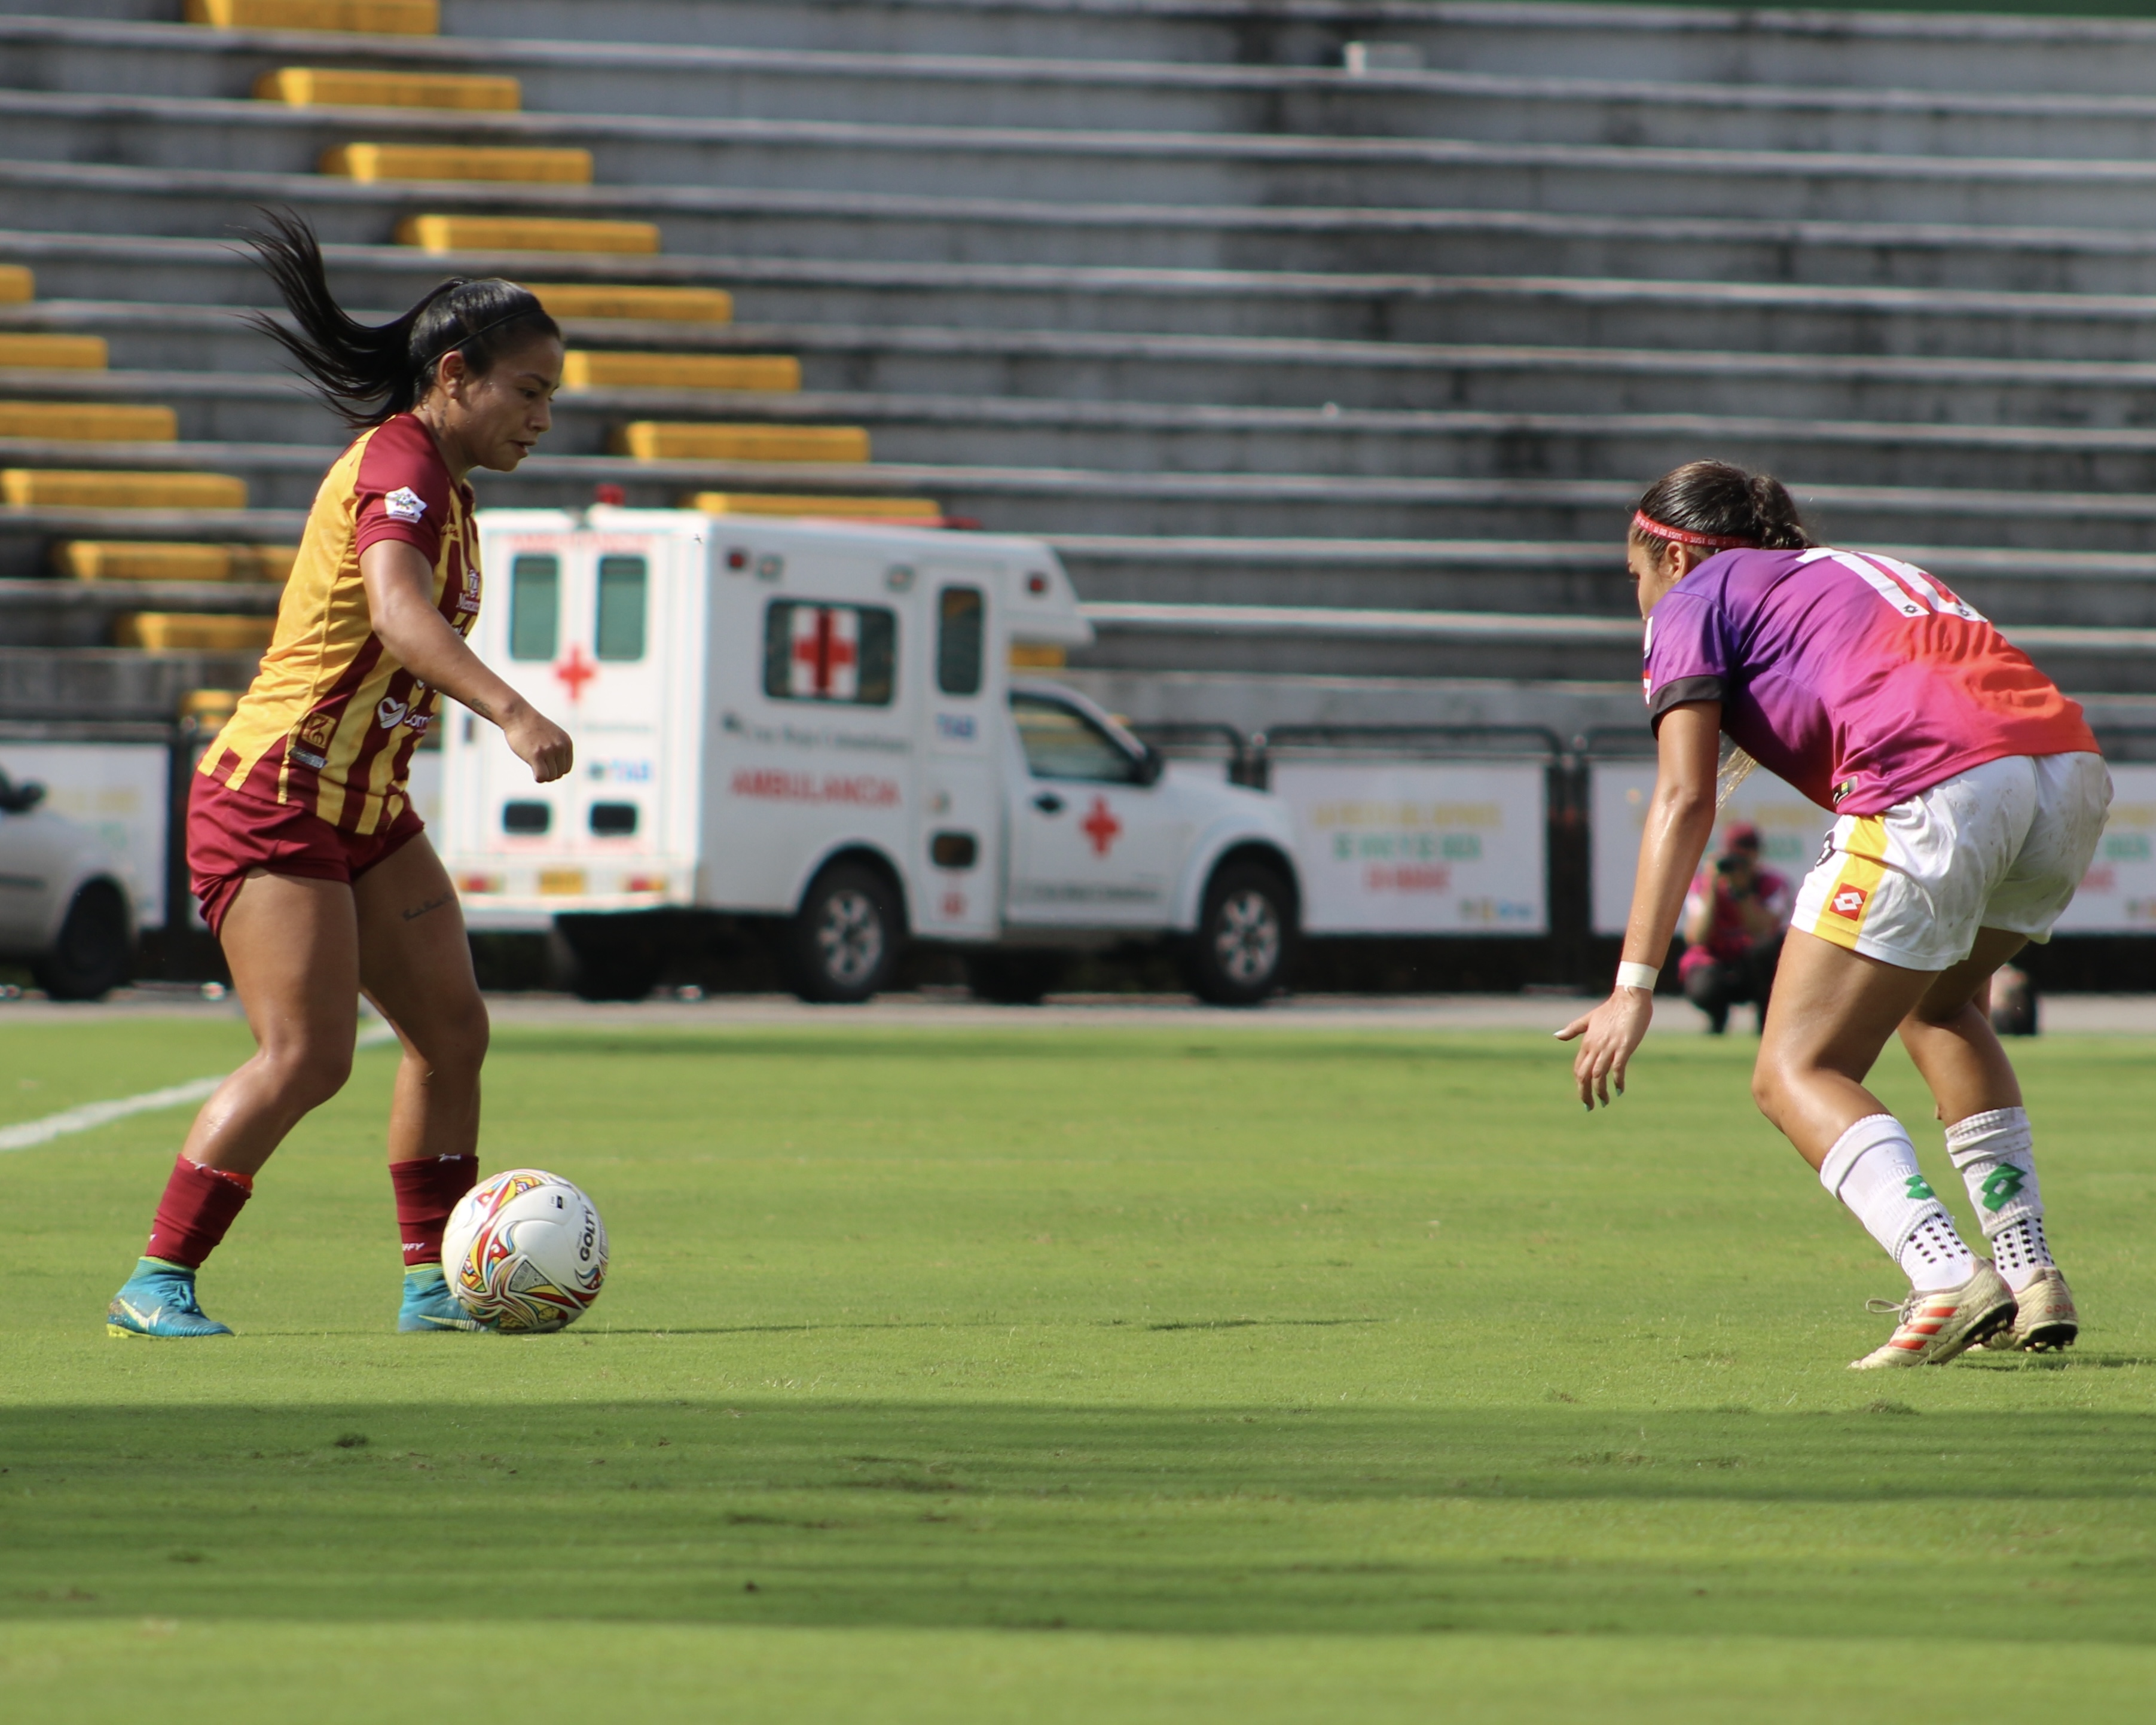 En el partido entre Tolima y Bucaramanga se alcanzaron los 1.700 goles en toda la historia de la Liga Femenina. Twitter Deportes Tolima Femenino